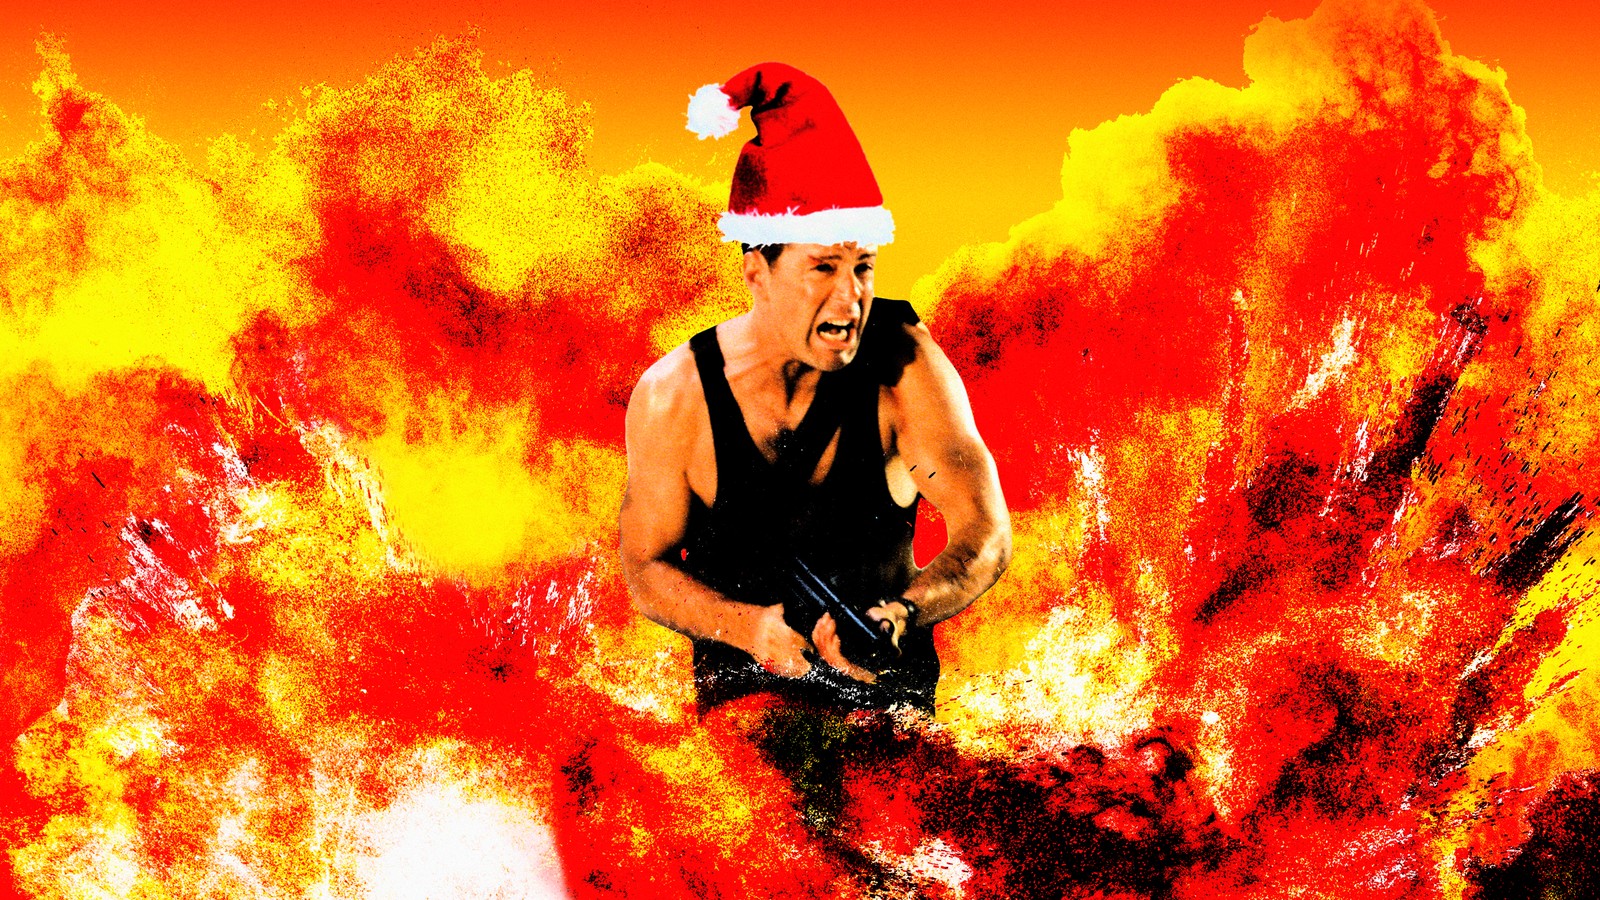 Die Hard is a Christmas (terrorism) movie